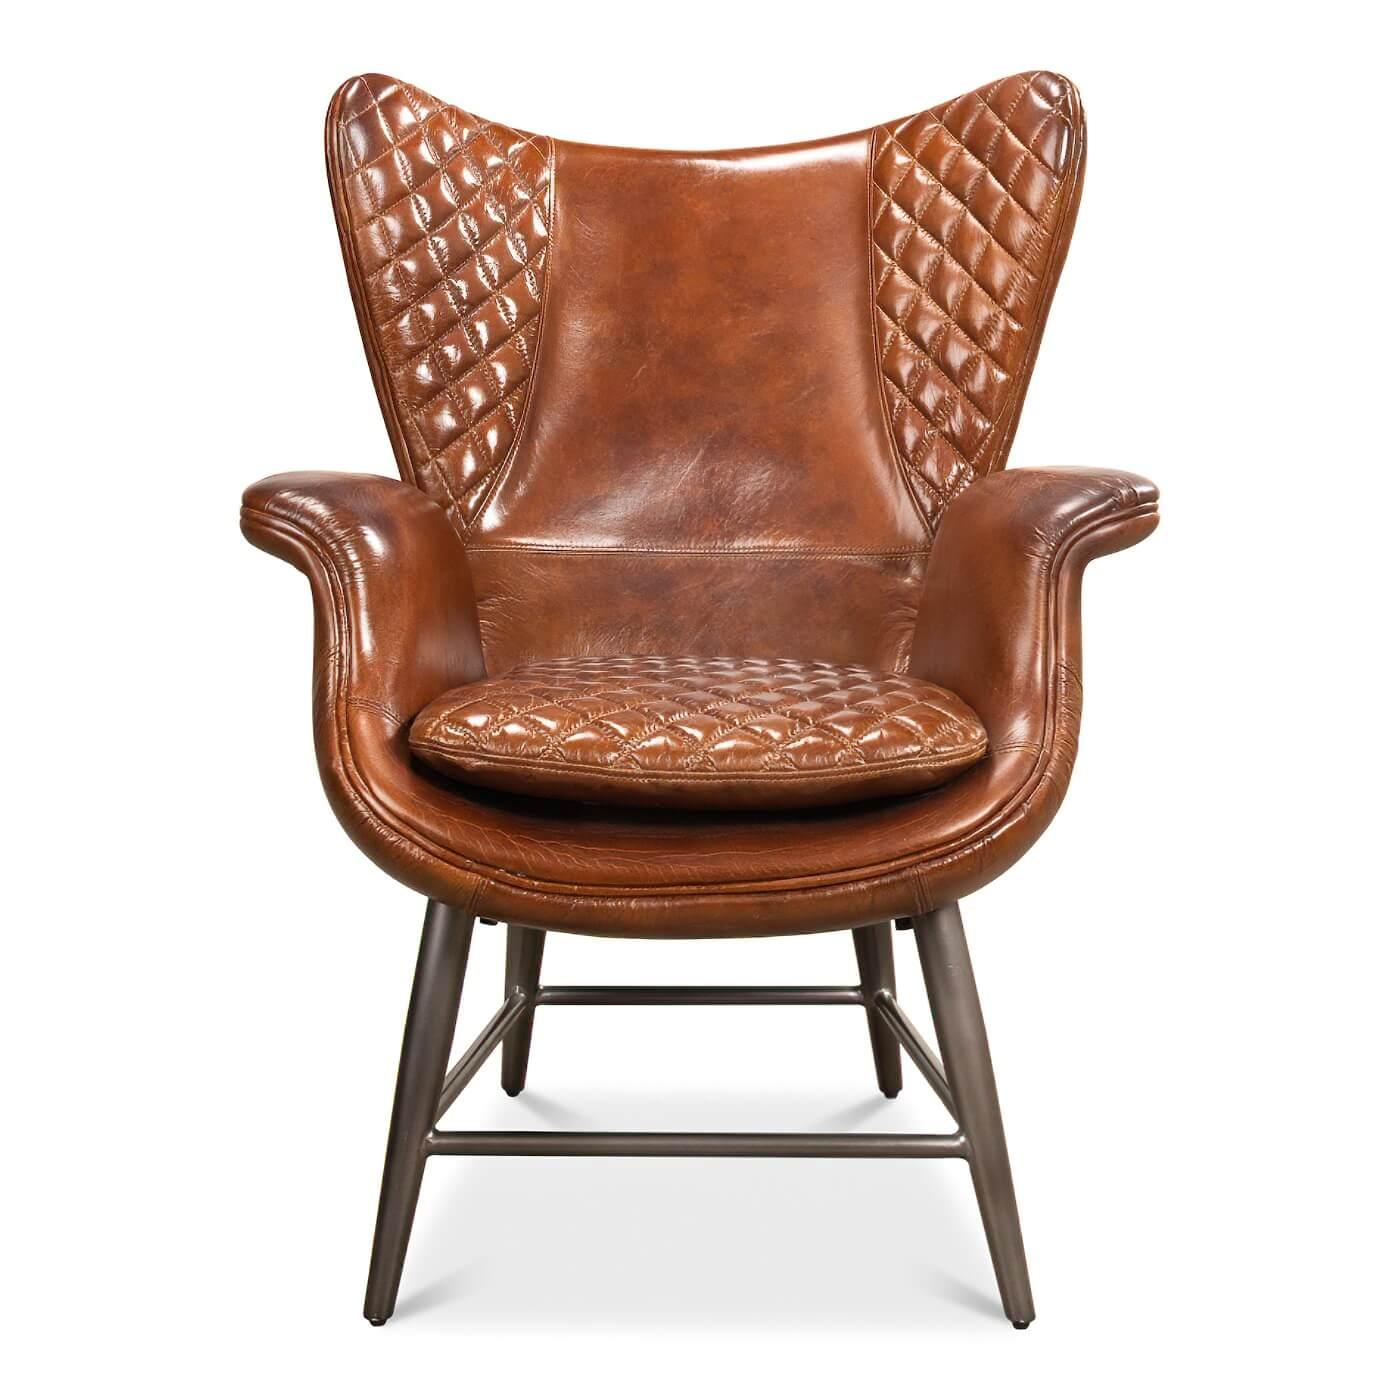 Fauteuil moderne en cuir brun matelassé avec dossier et accoudoirs incurvés. Cette chaise est détaillée avec des coutures surpiquées, du feutre et du matelassage. Il repose sur des pieds en métal pour un look industriel du milieu du siècle.